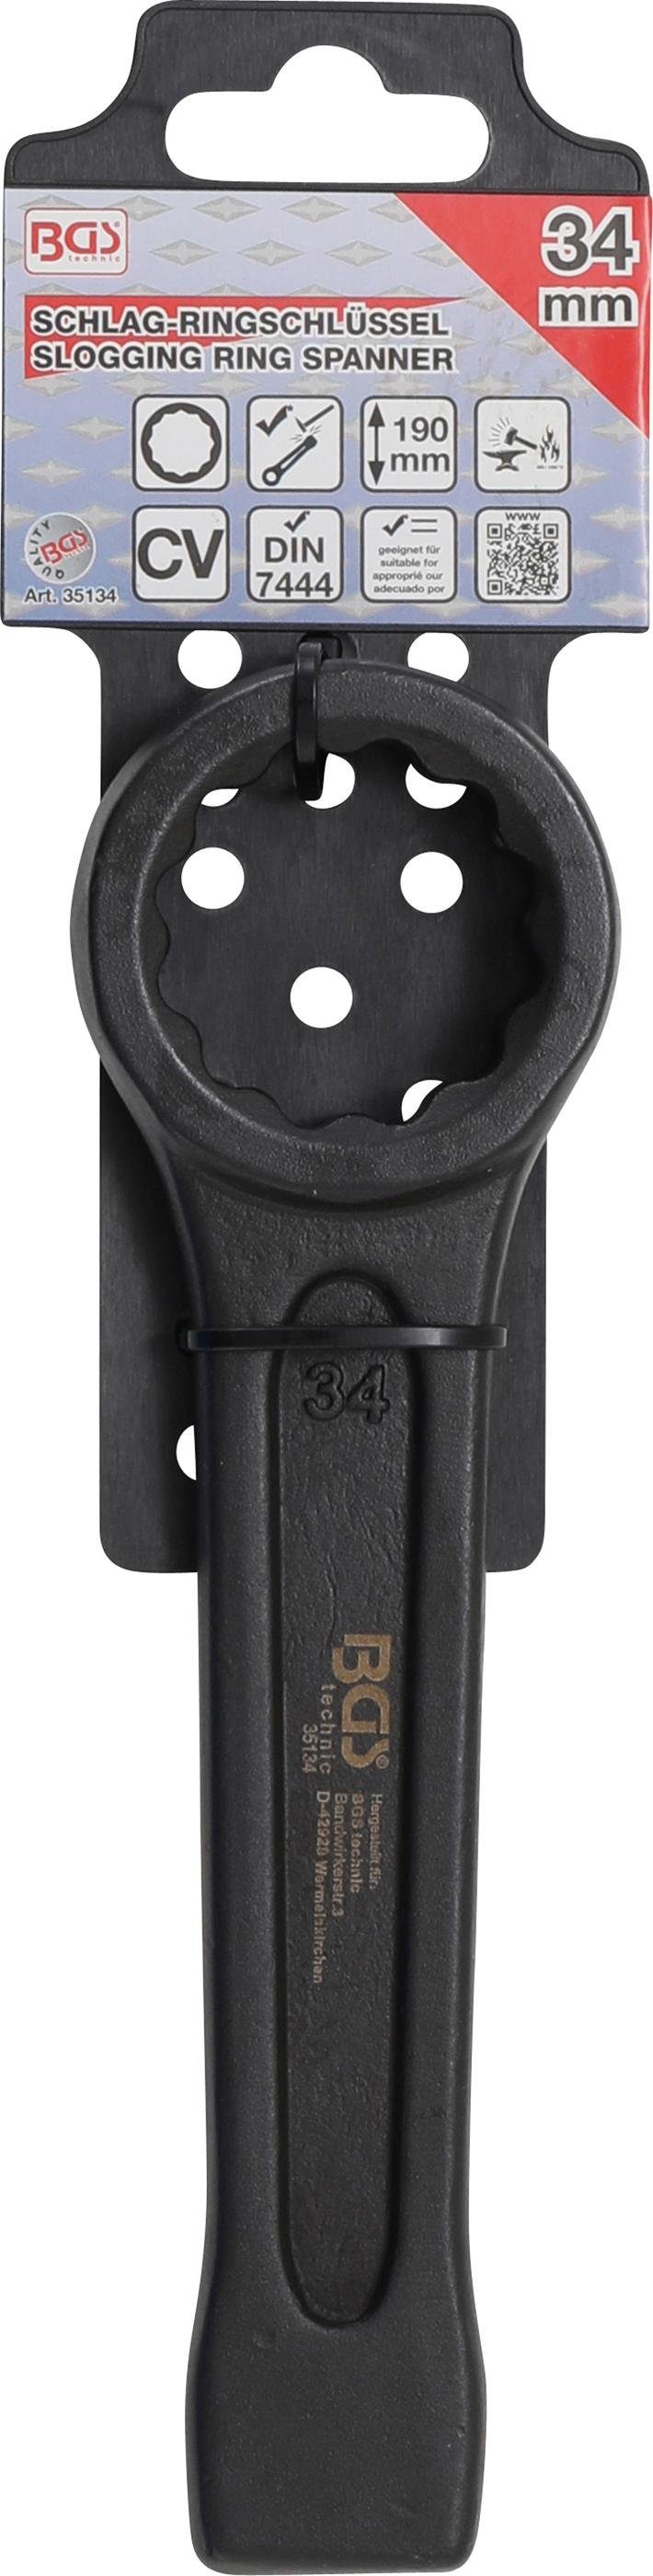 SW BGS Schlag-Ringschlüssel, 34 mm technic Ringschlüssel